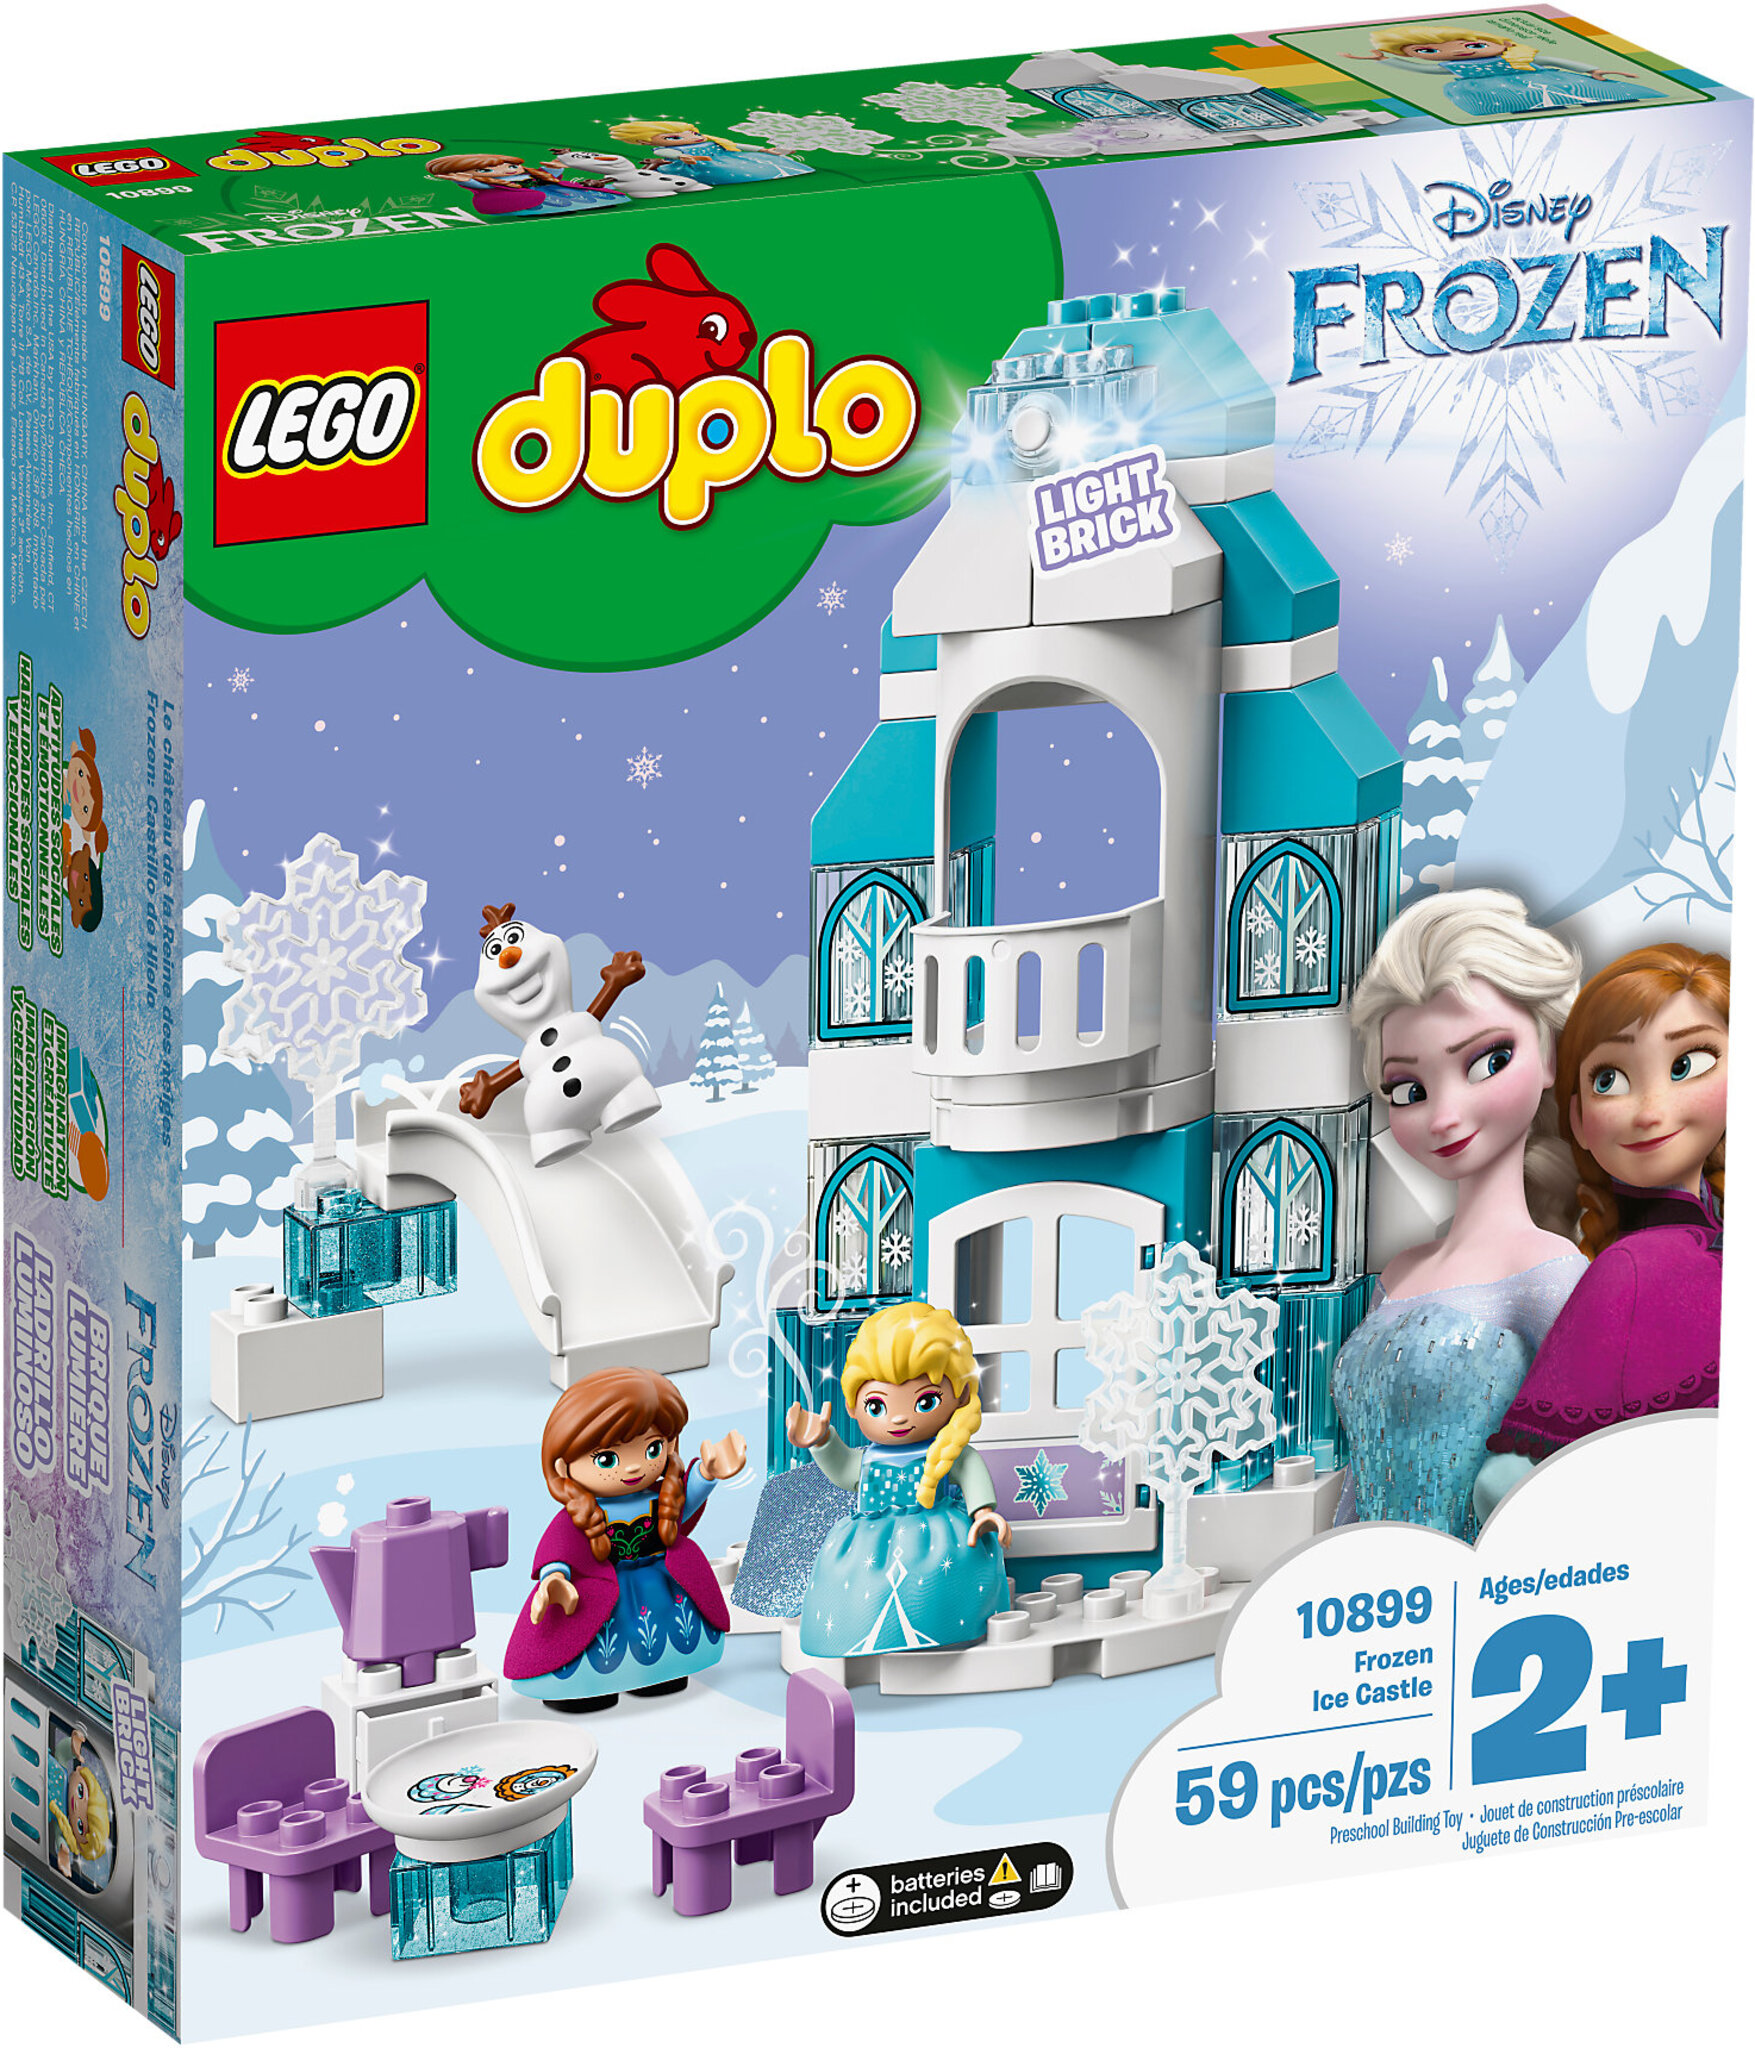 LEGO Duplo 10899 - Il Castello di Ghiaccio di Frozen